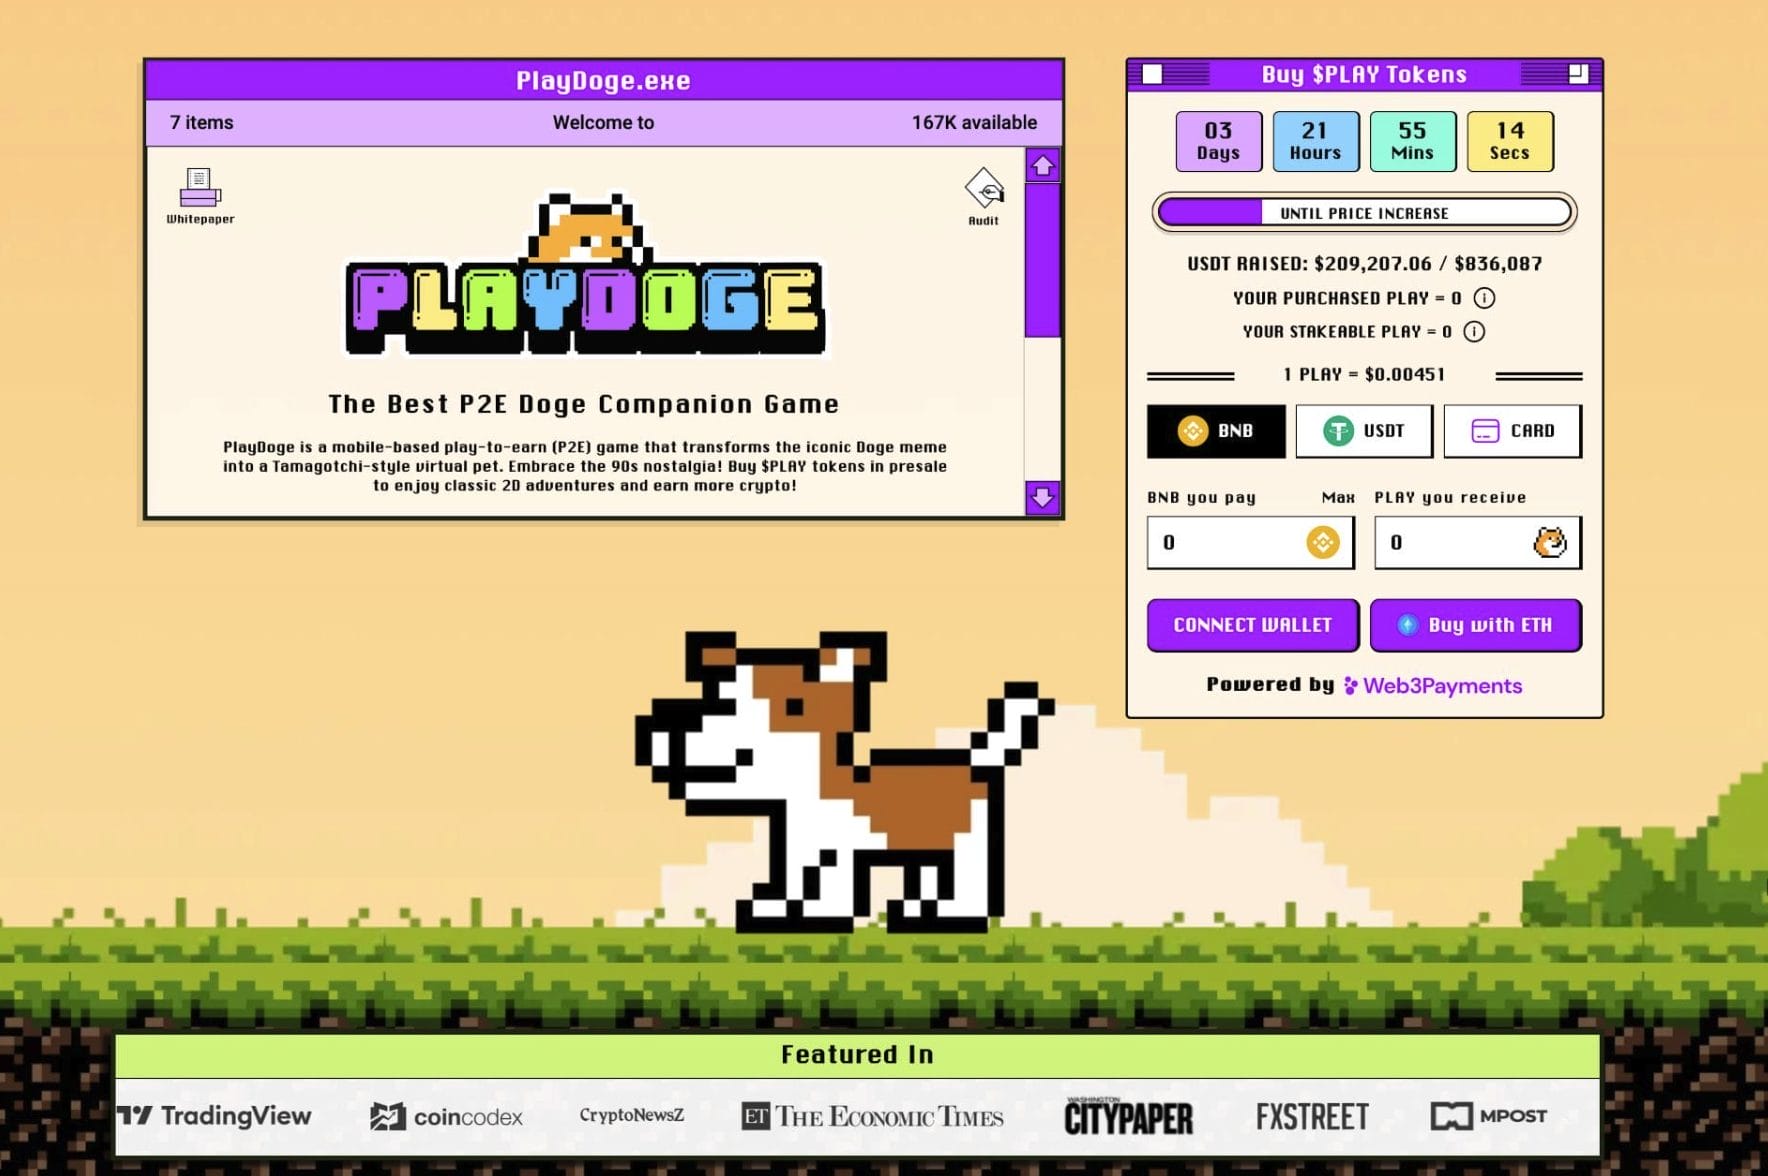 PlayDoge raises $200,000 within minutes